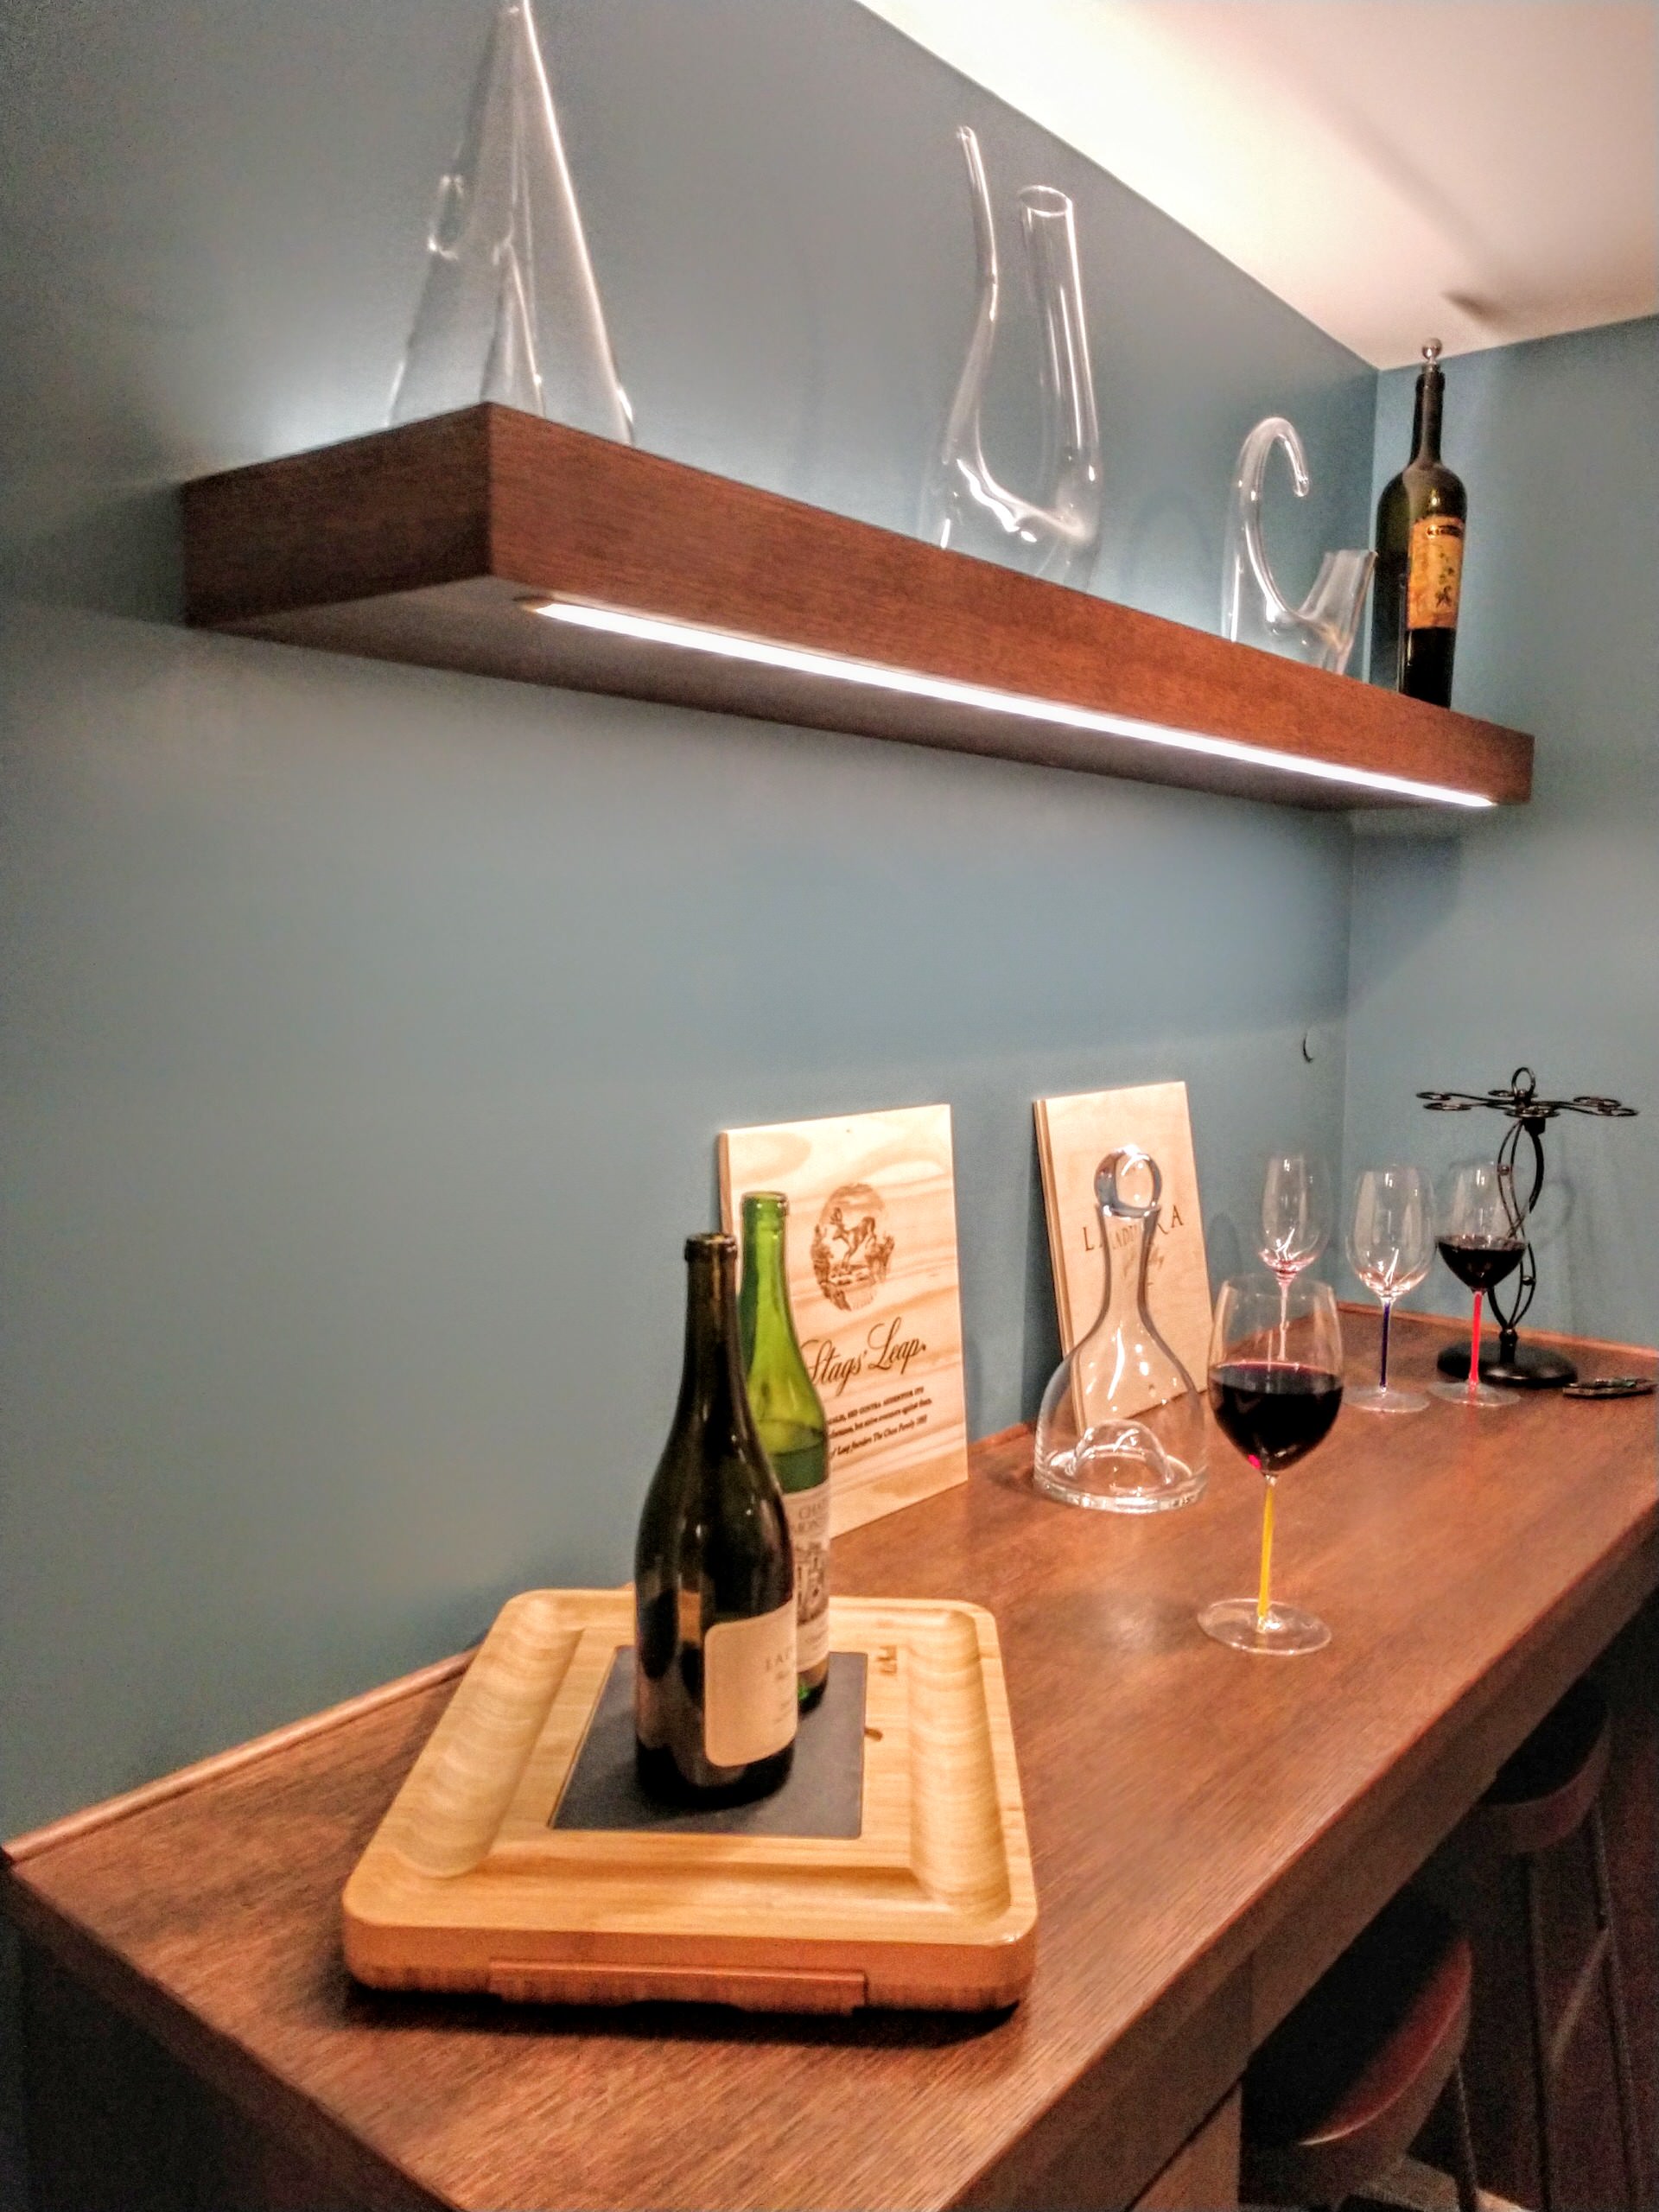 Ordinay Mud room converted into a beautiful custom wine tasting room.